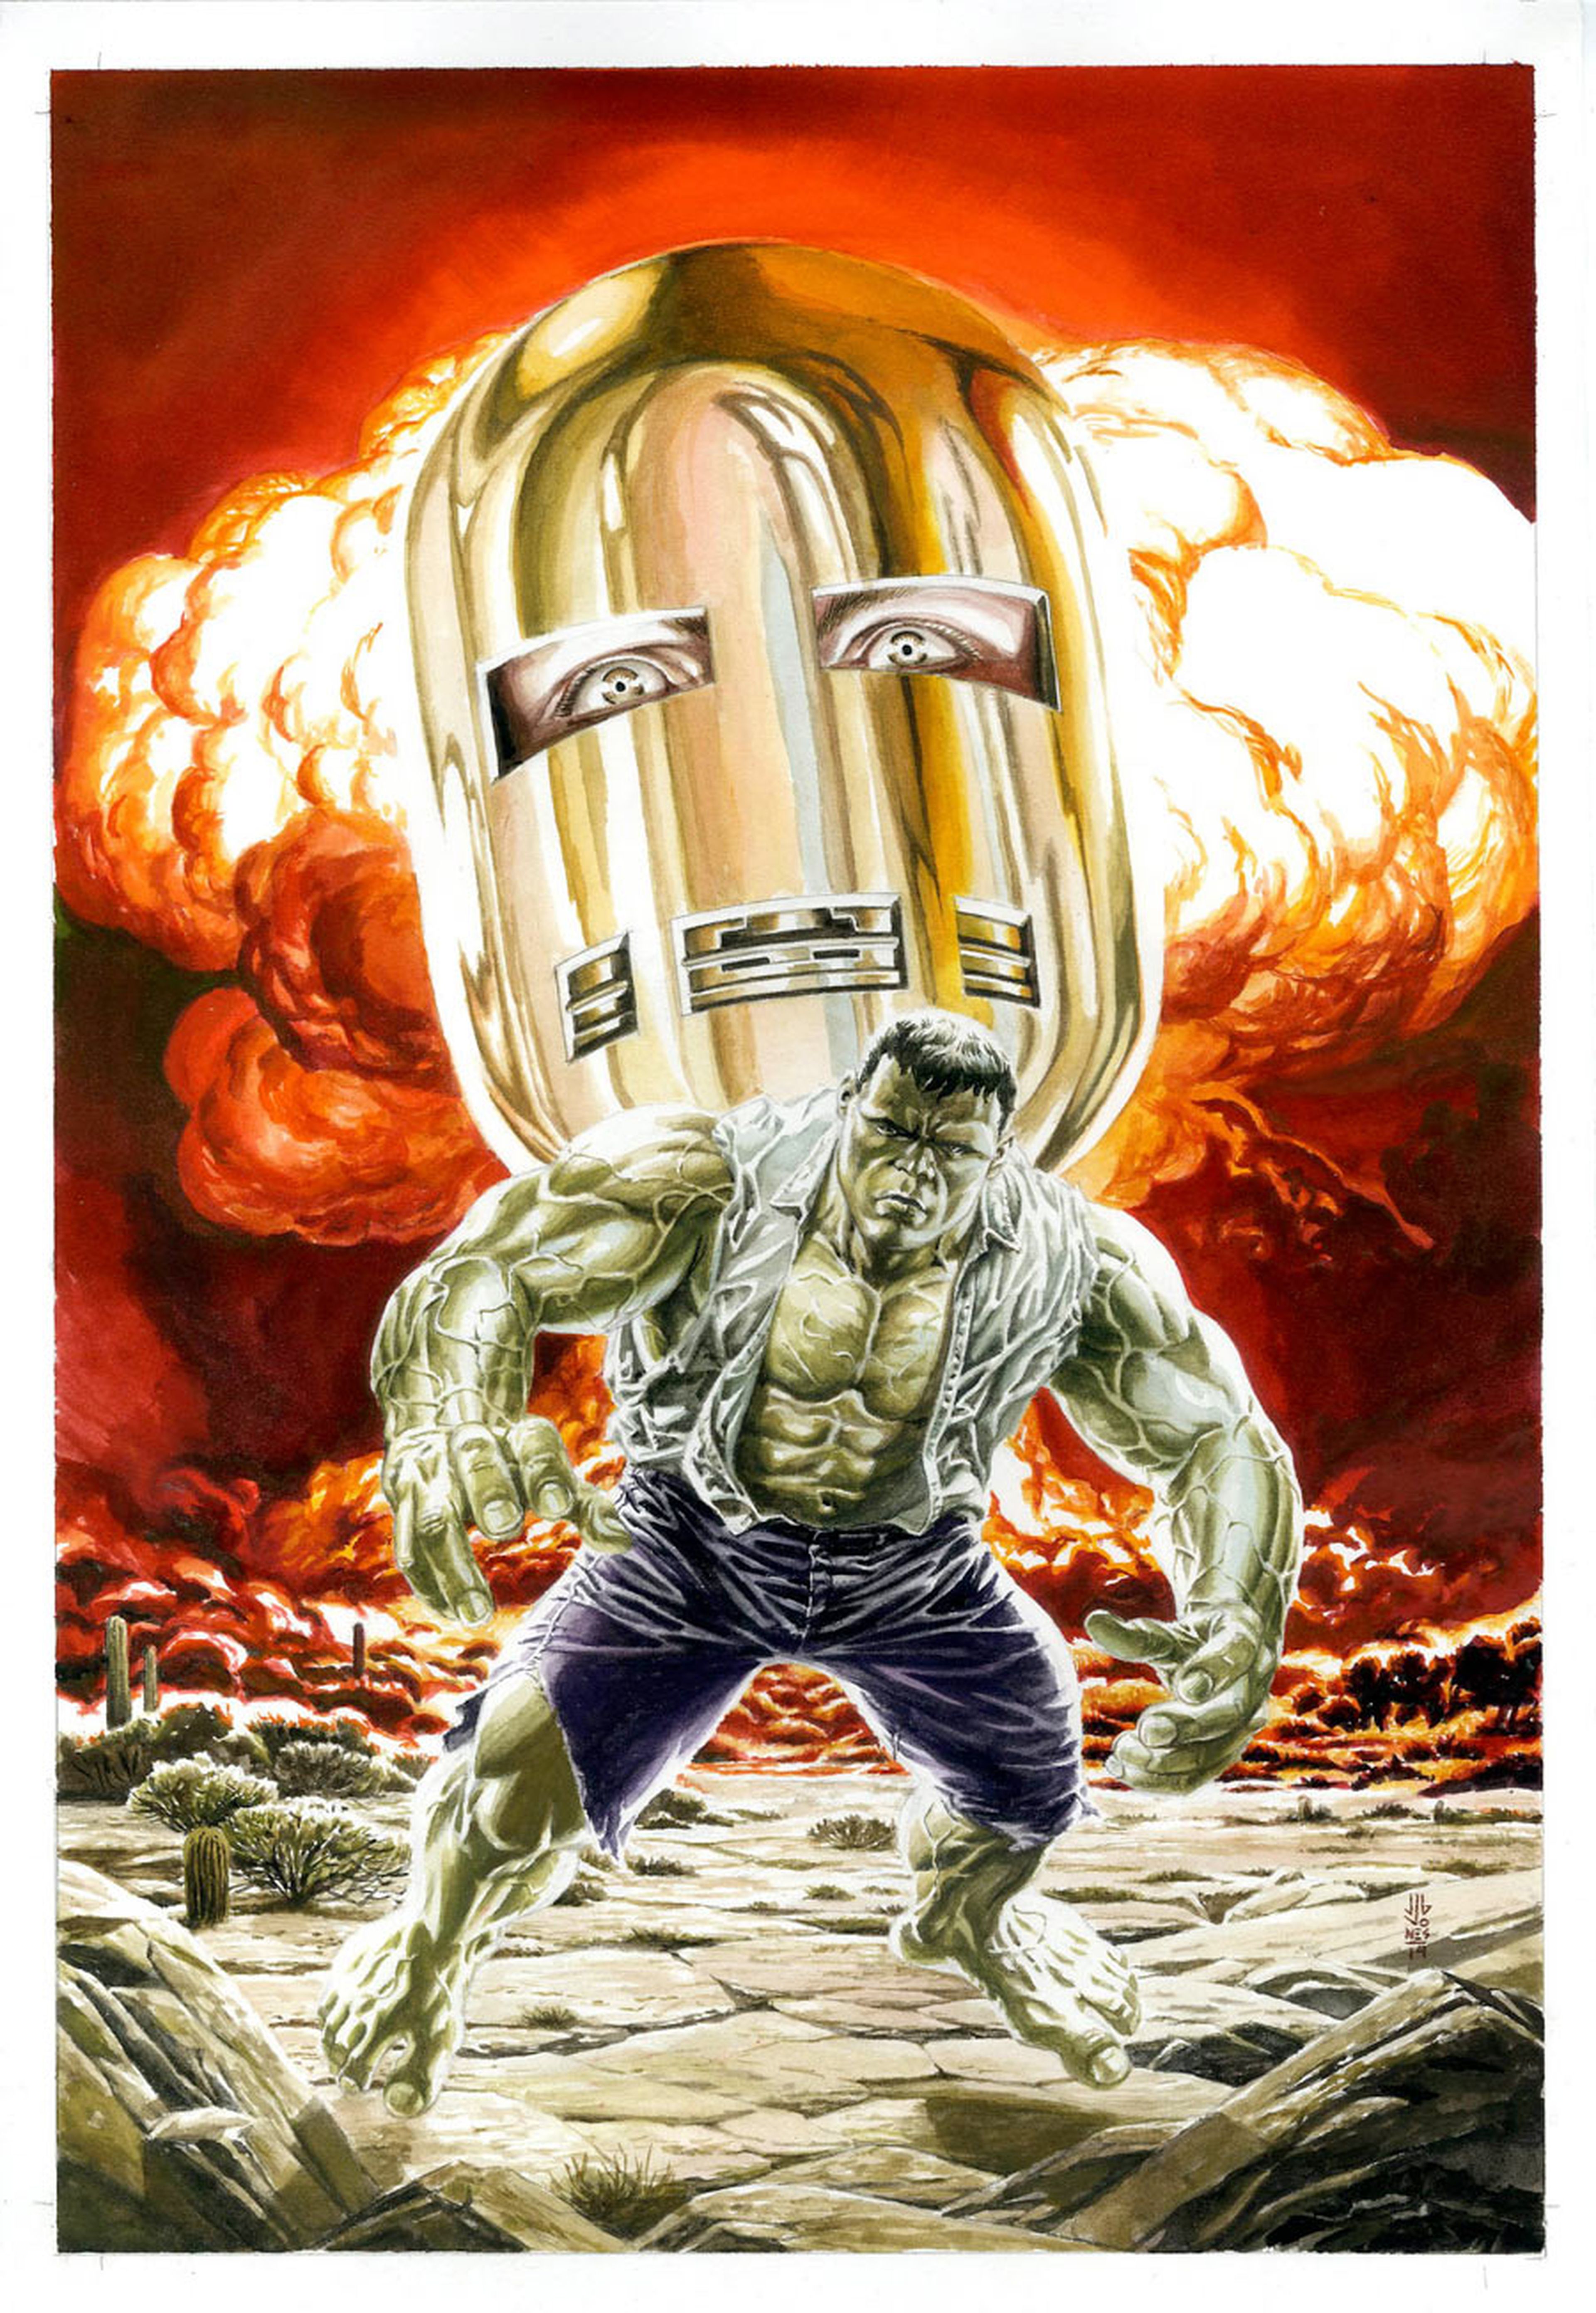 Los orígenes de Iron Man y Hulk se revisarán en los cómics